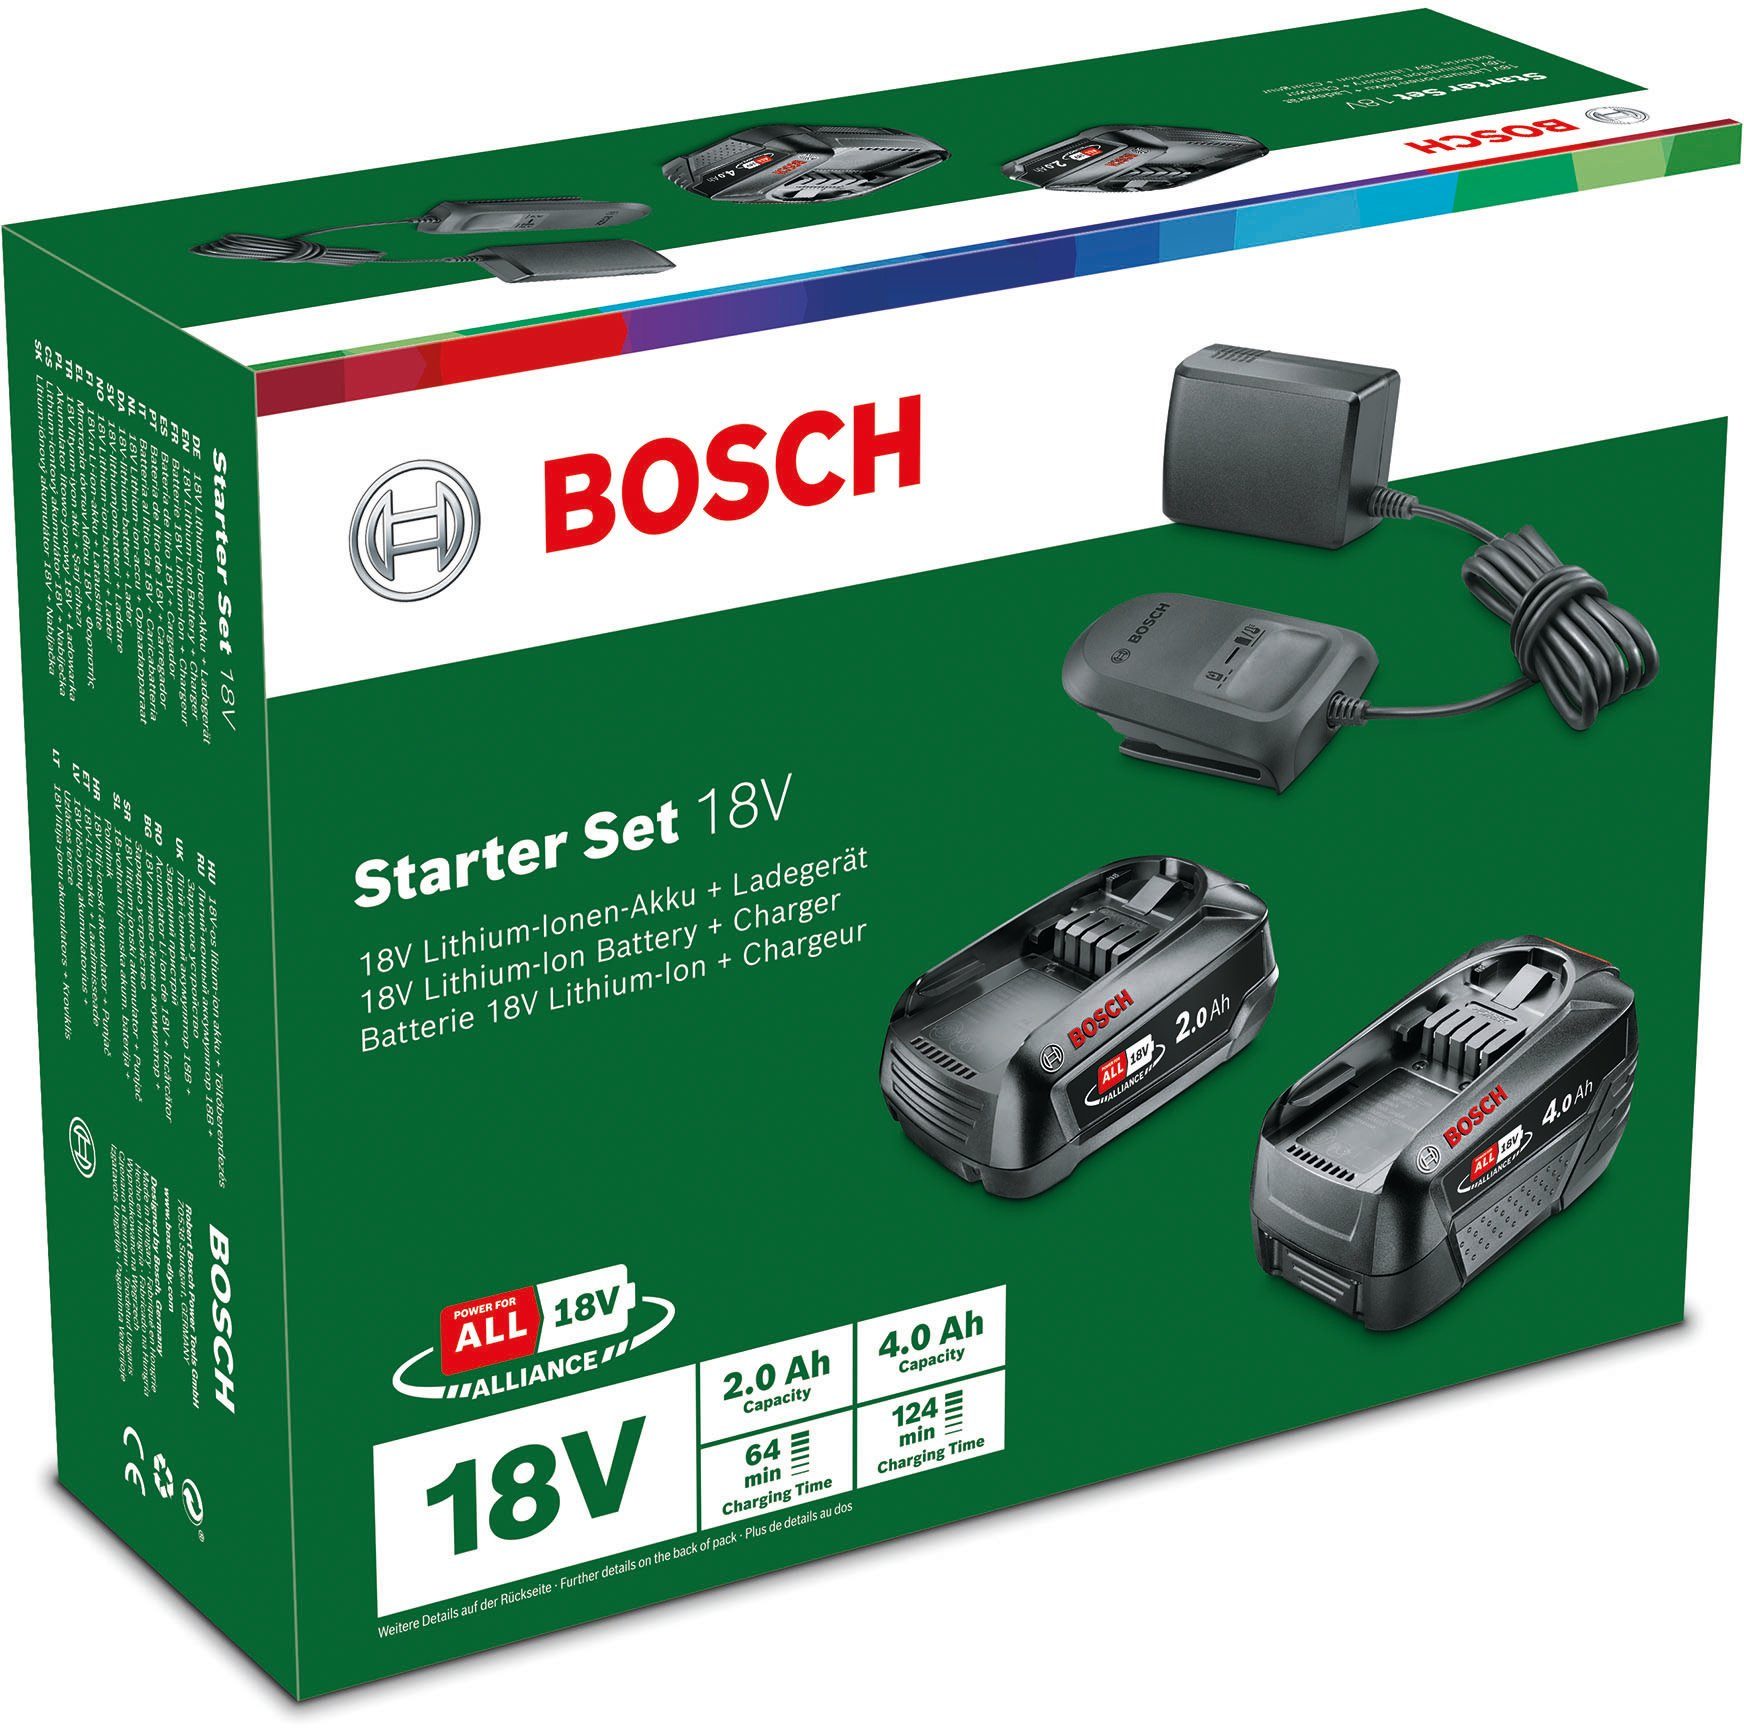 Bosch Ladegerät & 2 Akku (18,0 aus 1 bestehend Garden St), Starter-Set Akkus 3 V, Home und